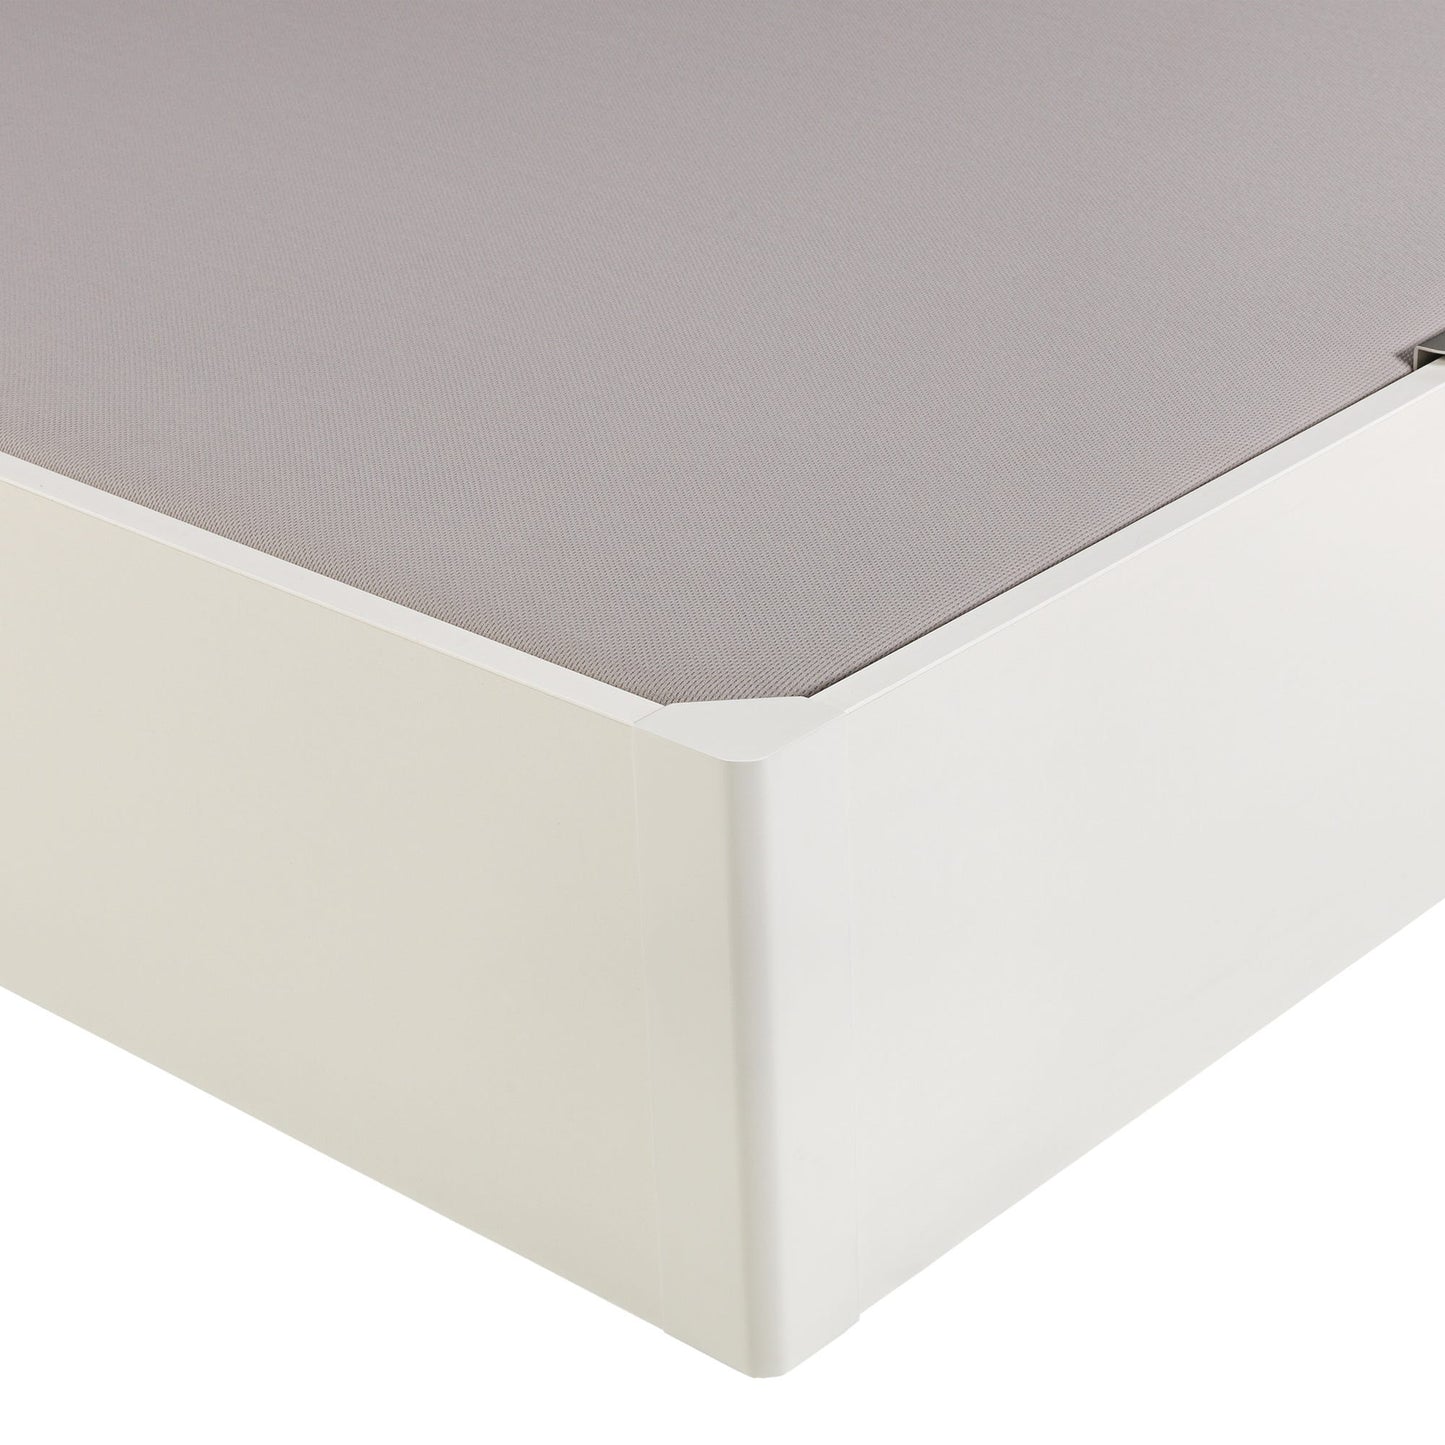 Canapé abatible de madera eléctrico de alta capacidad tapa única de color blanco - DESIGN - 90x190